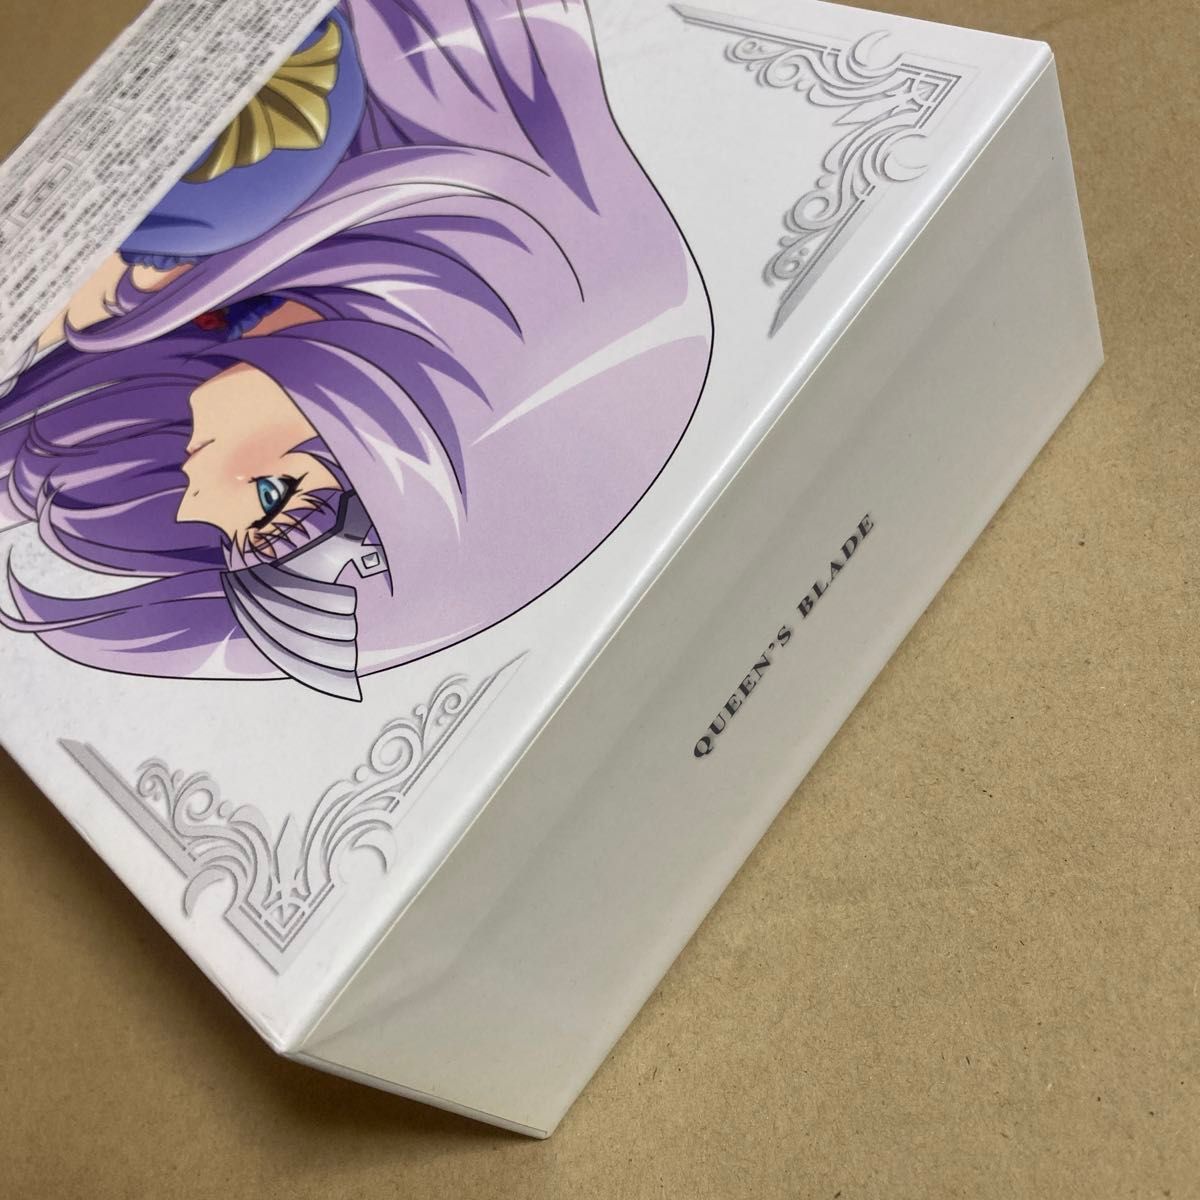 BD クイーンズブレイド Complete Blu-ray BOX コンプリートブルーレイボックス